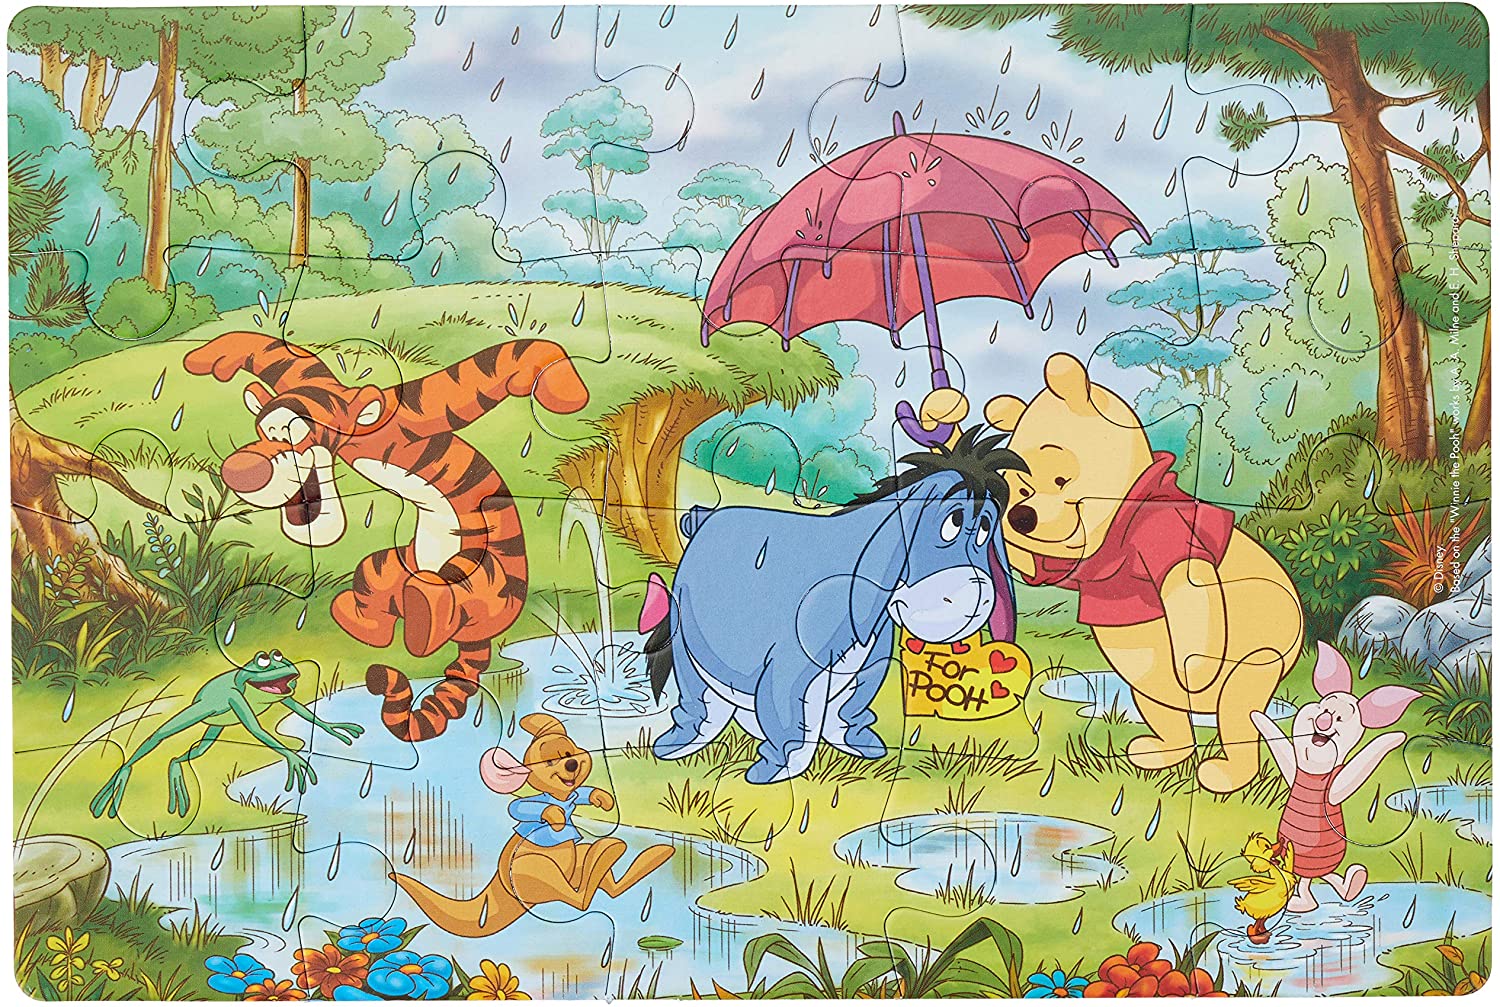 CLEMENTONI | Winnie the Pooh - 2x20 pcs - Supercolor Puzzle - Mod: CLM24516